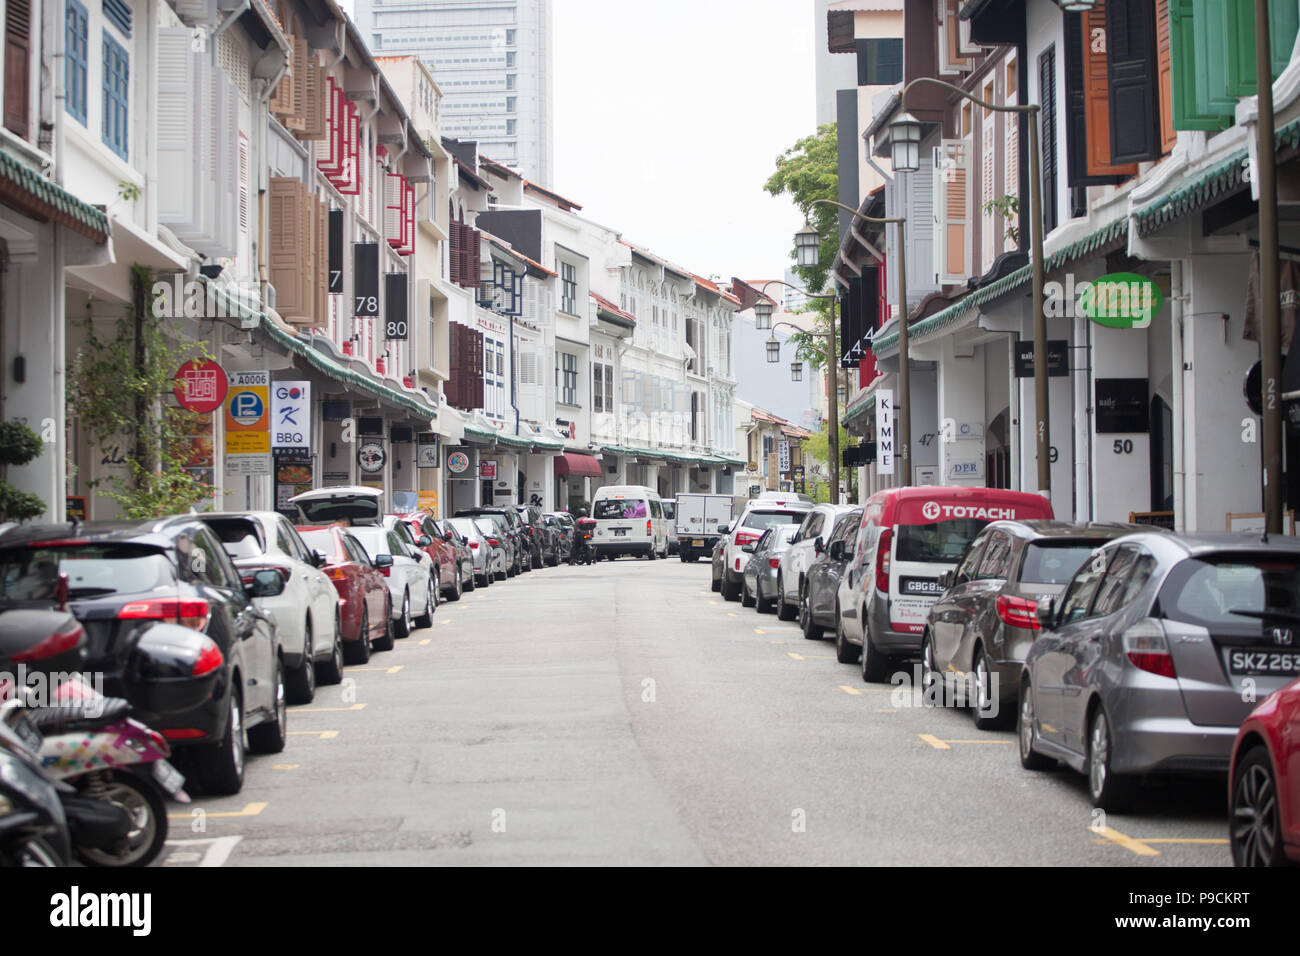 Die Einbahnstraße ist mit Fahrzeugen gefüllt, die an den Seiten vor dem historischen Ladengeschäft geparkt sind. Singapur. Stockfoto